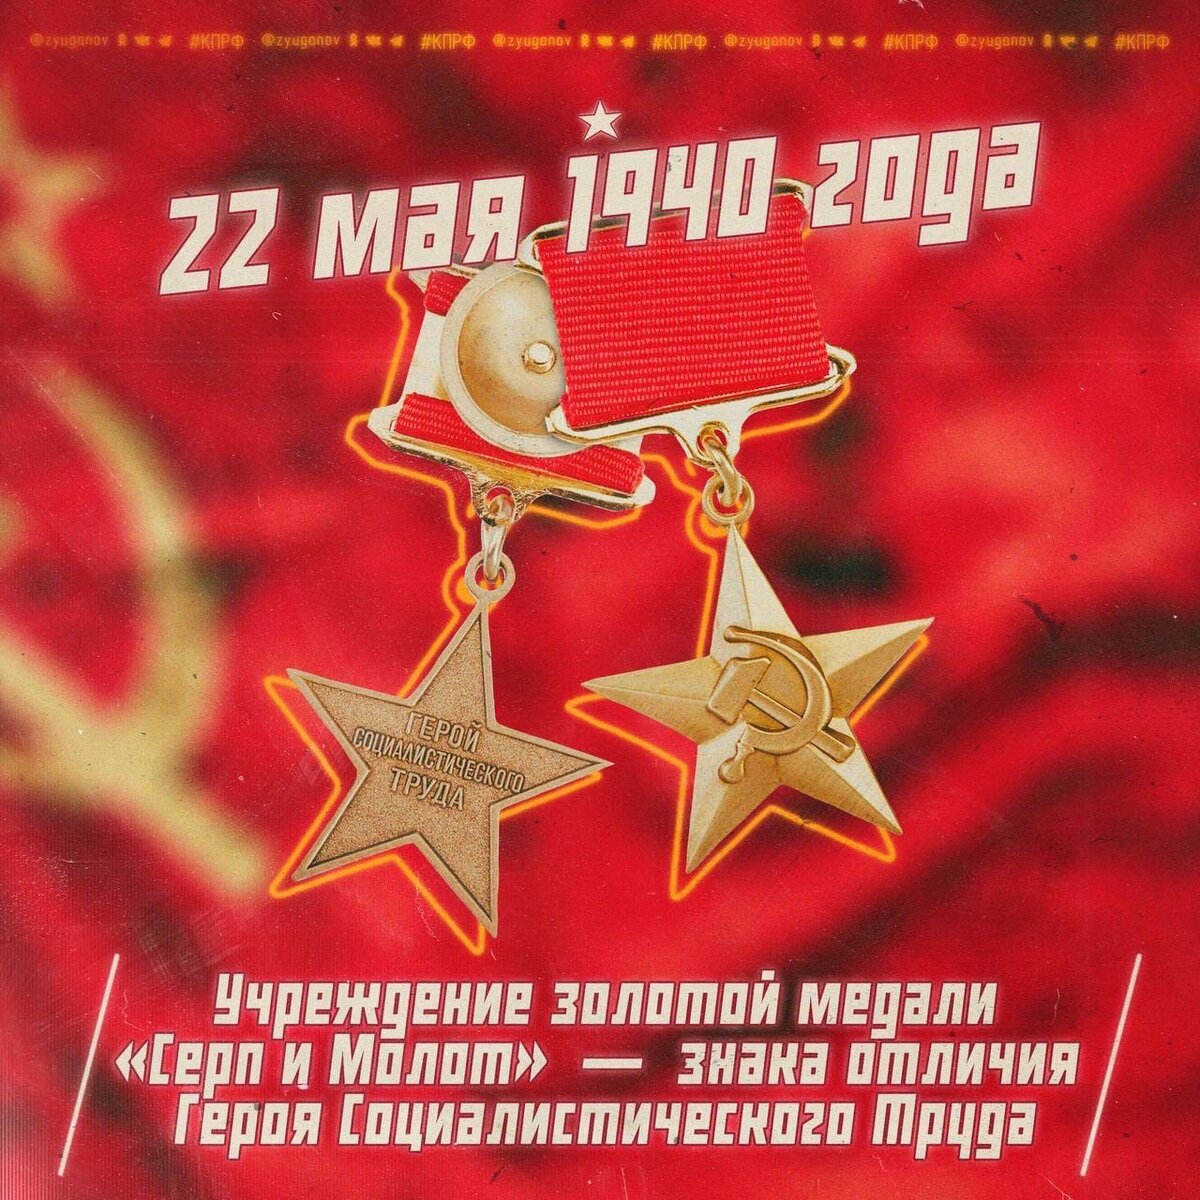 84 года назад, 22 мая 1940 г, указом Президиума Верховного Совета СССР учреждена Золотая медаль «Серп и Молот» как высшая степень отличия граждан, награждённых званием Герой Социалистического Труда.